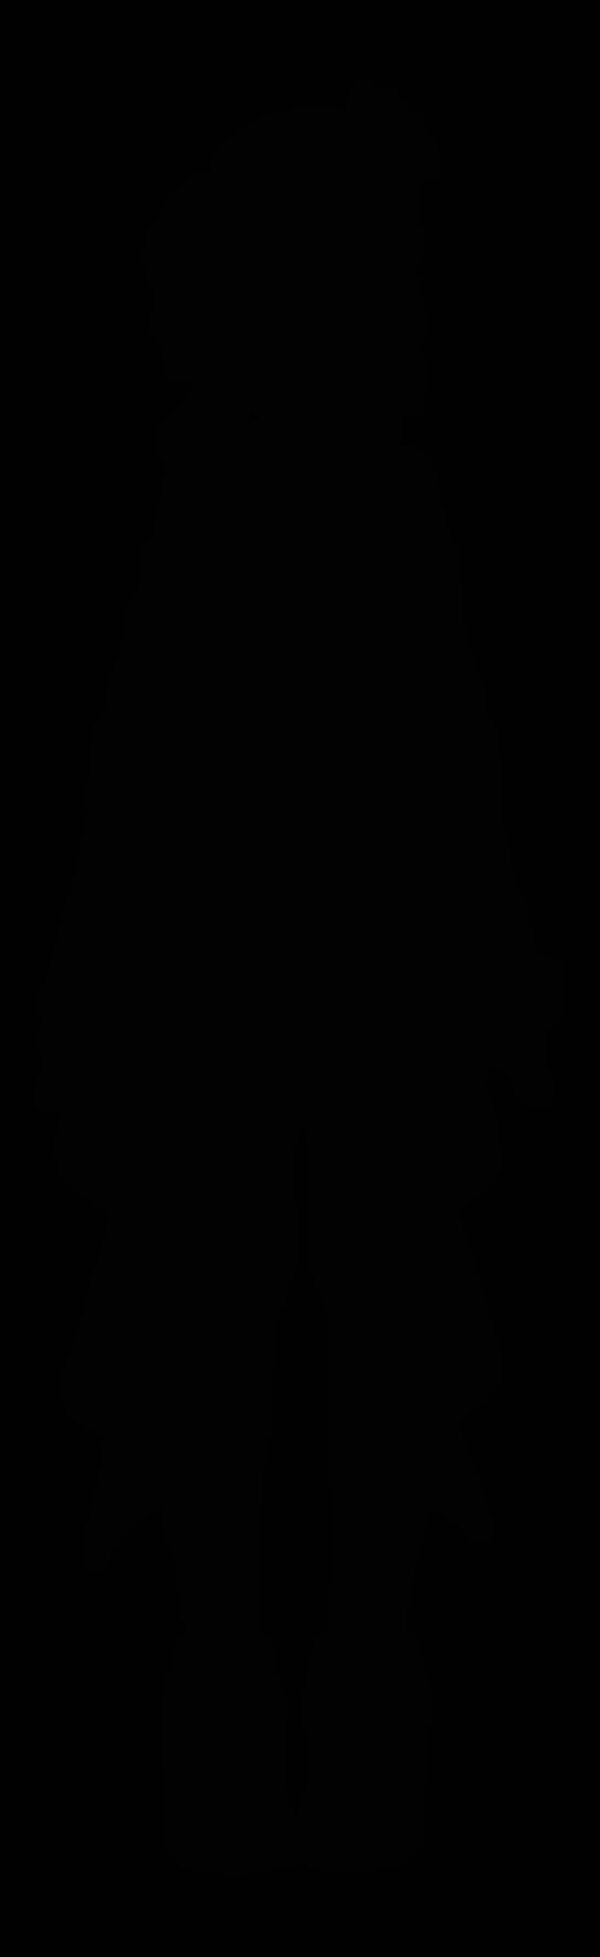 ホロライブ所属vtuber 星街すいせい 新live2dモデルお披露目放送と転籍のお知らせ 19年11月29日 エキサイトニュース